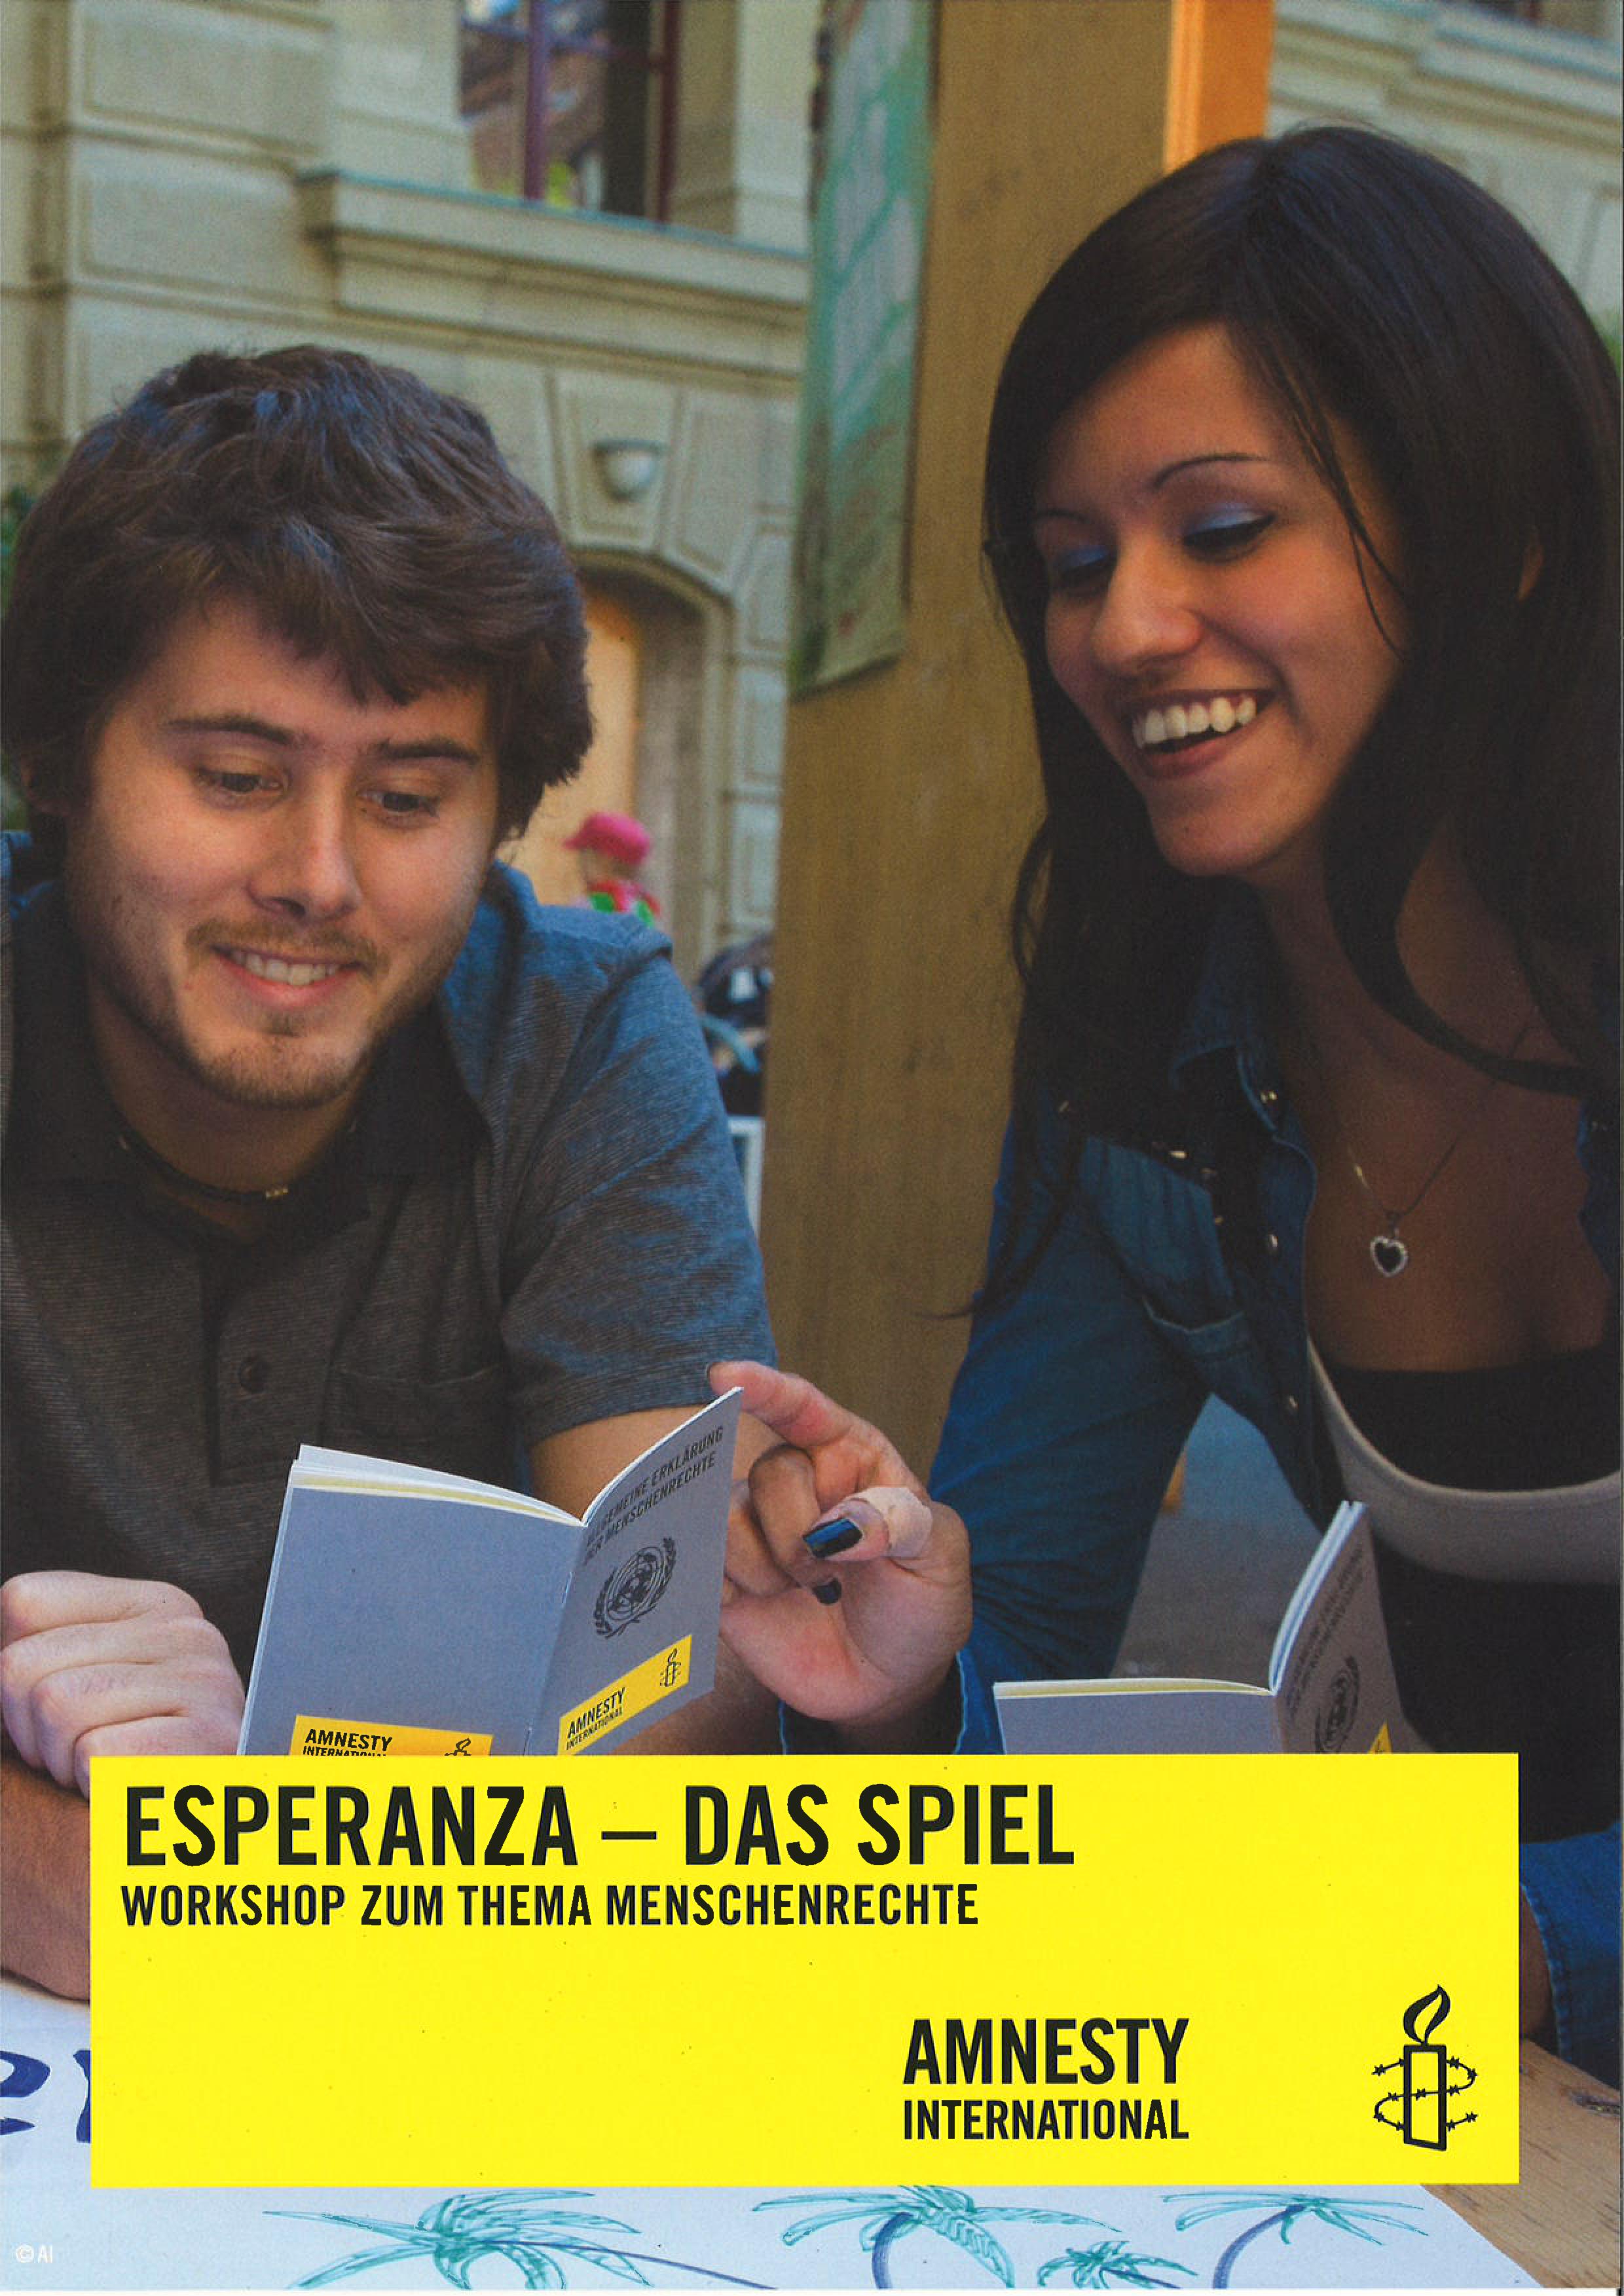 Esperanza Workshop